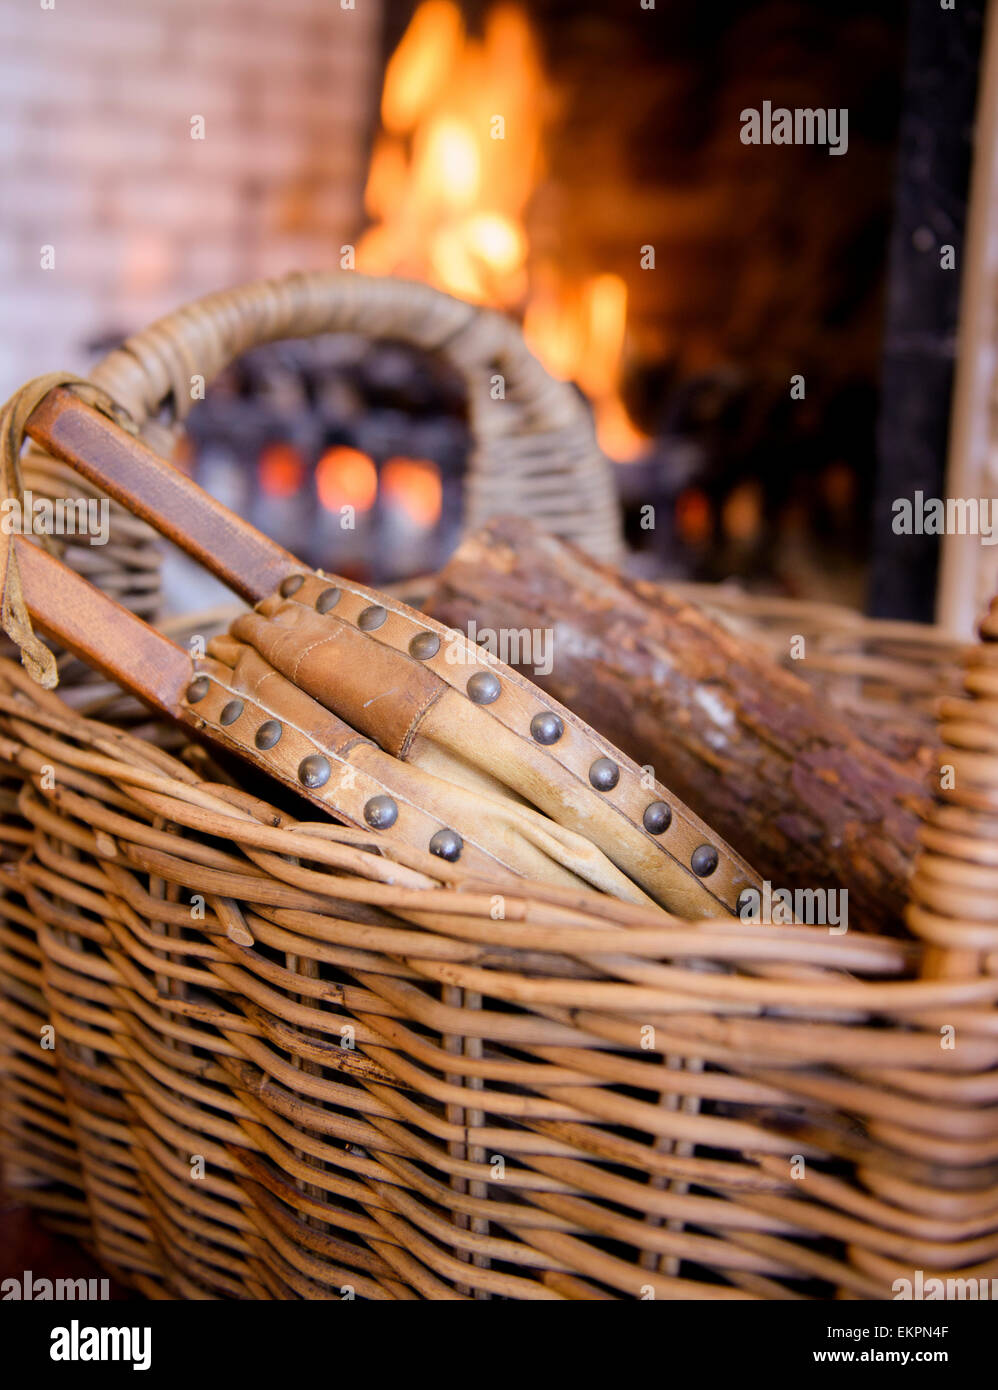 Leather Basket, Handwoven Log Basket, Leather Storage Basket, Large Basket,  Big Firewood Basket, Hand Woven Leather Basket, Storage Bin